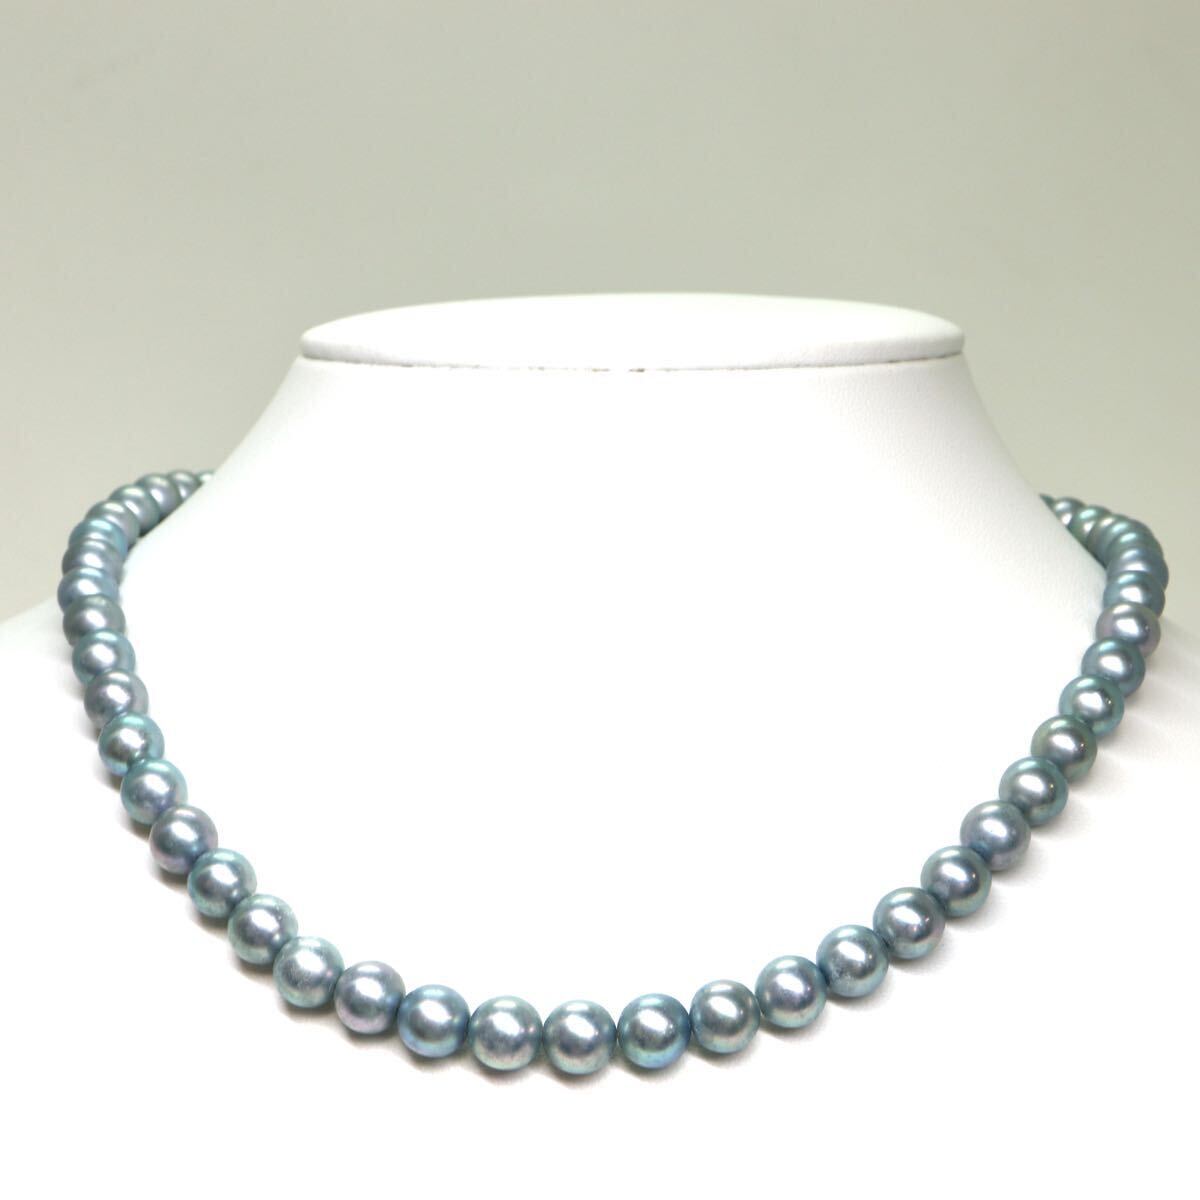 《アコヤ本真珠ネックレス》A 約7.0-7.5mm珠 33.2g 約41cm pearl necklace ジュエリー jewelry DA5/DC0の画像2